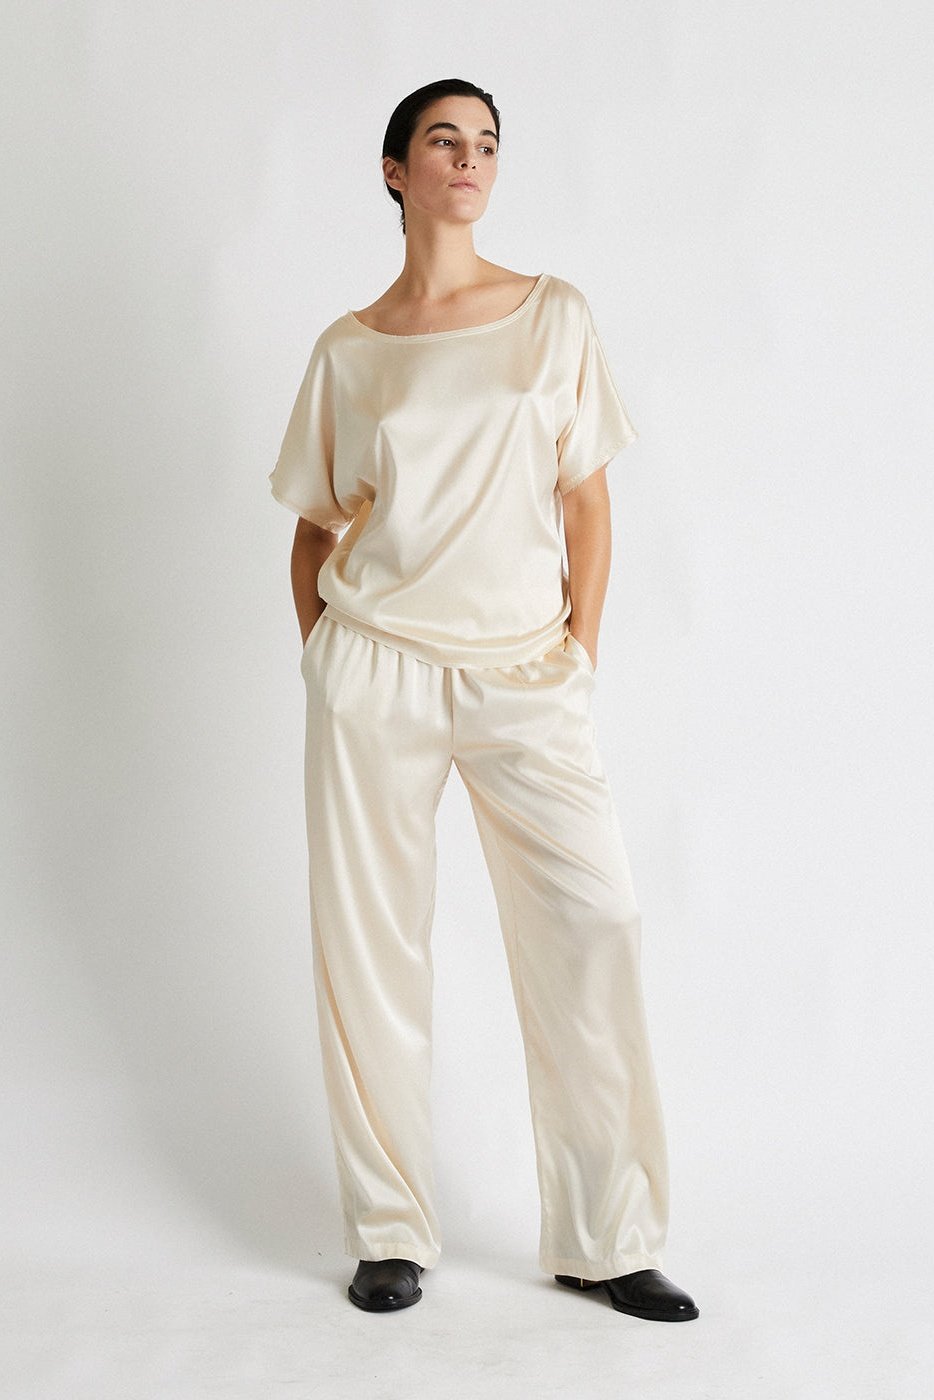 + Beryll Lena Silk Pants | Latte - + Beryll Silk Pants Lena | Pearl - +Beryll Worn By Good People